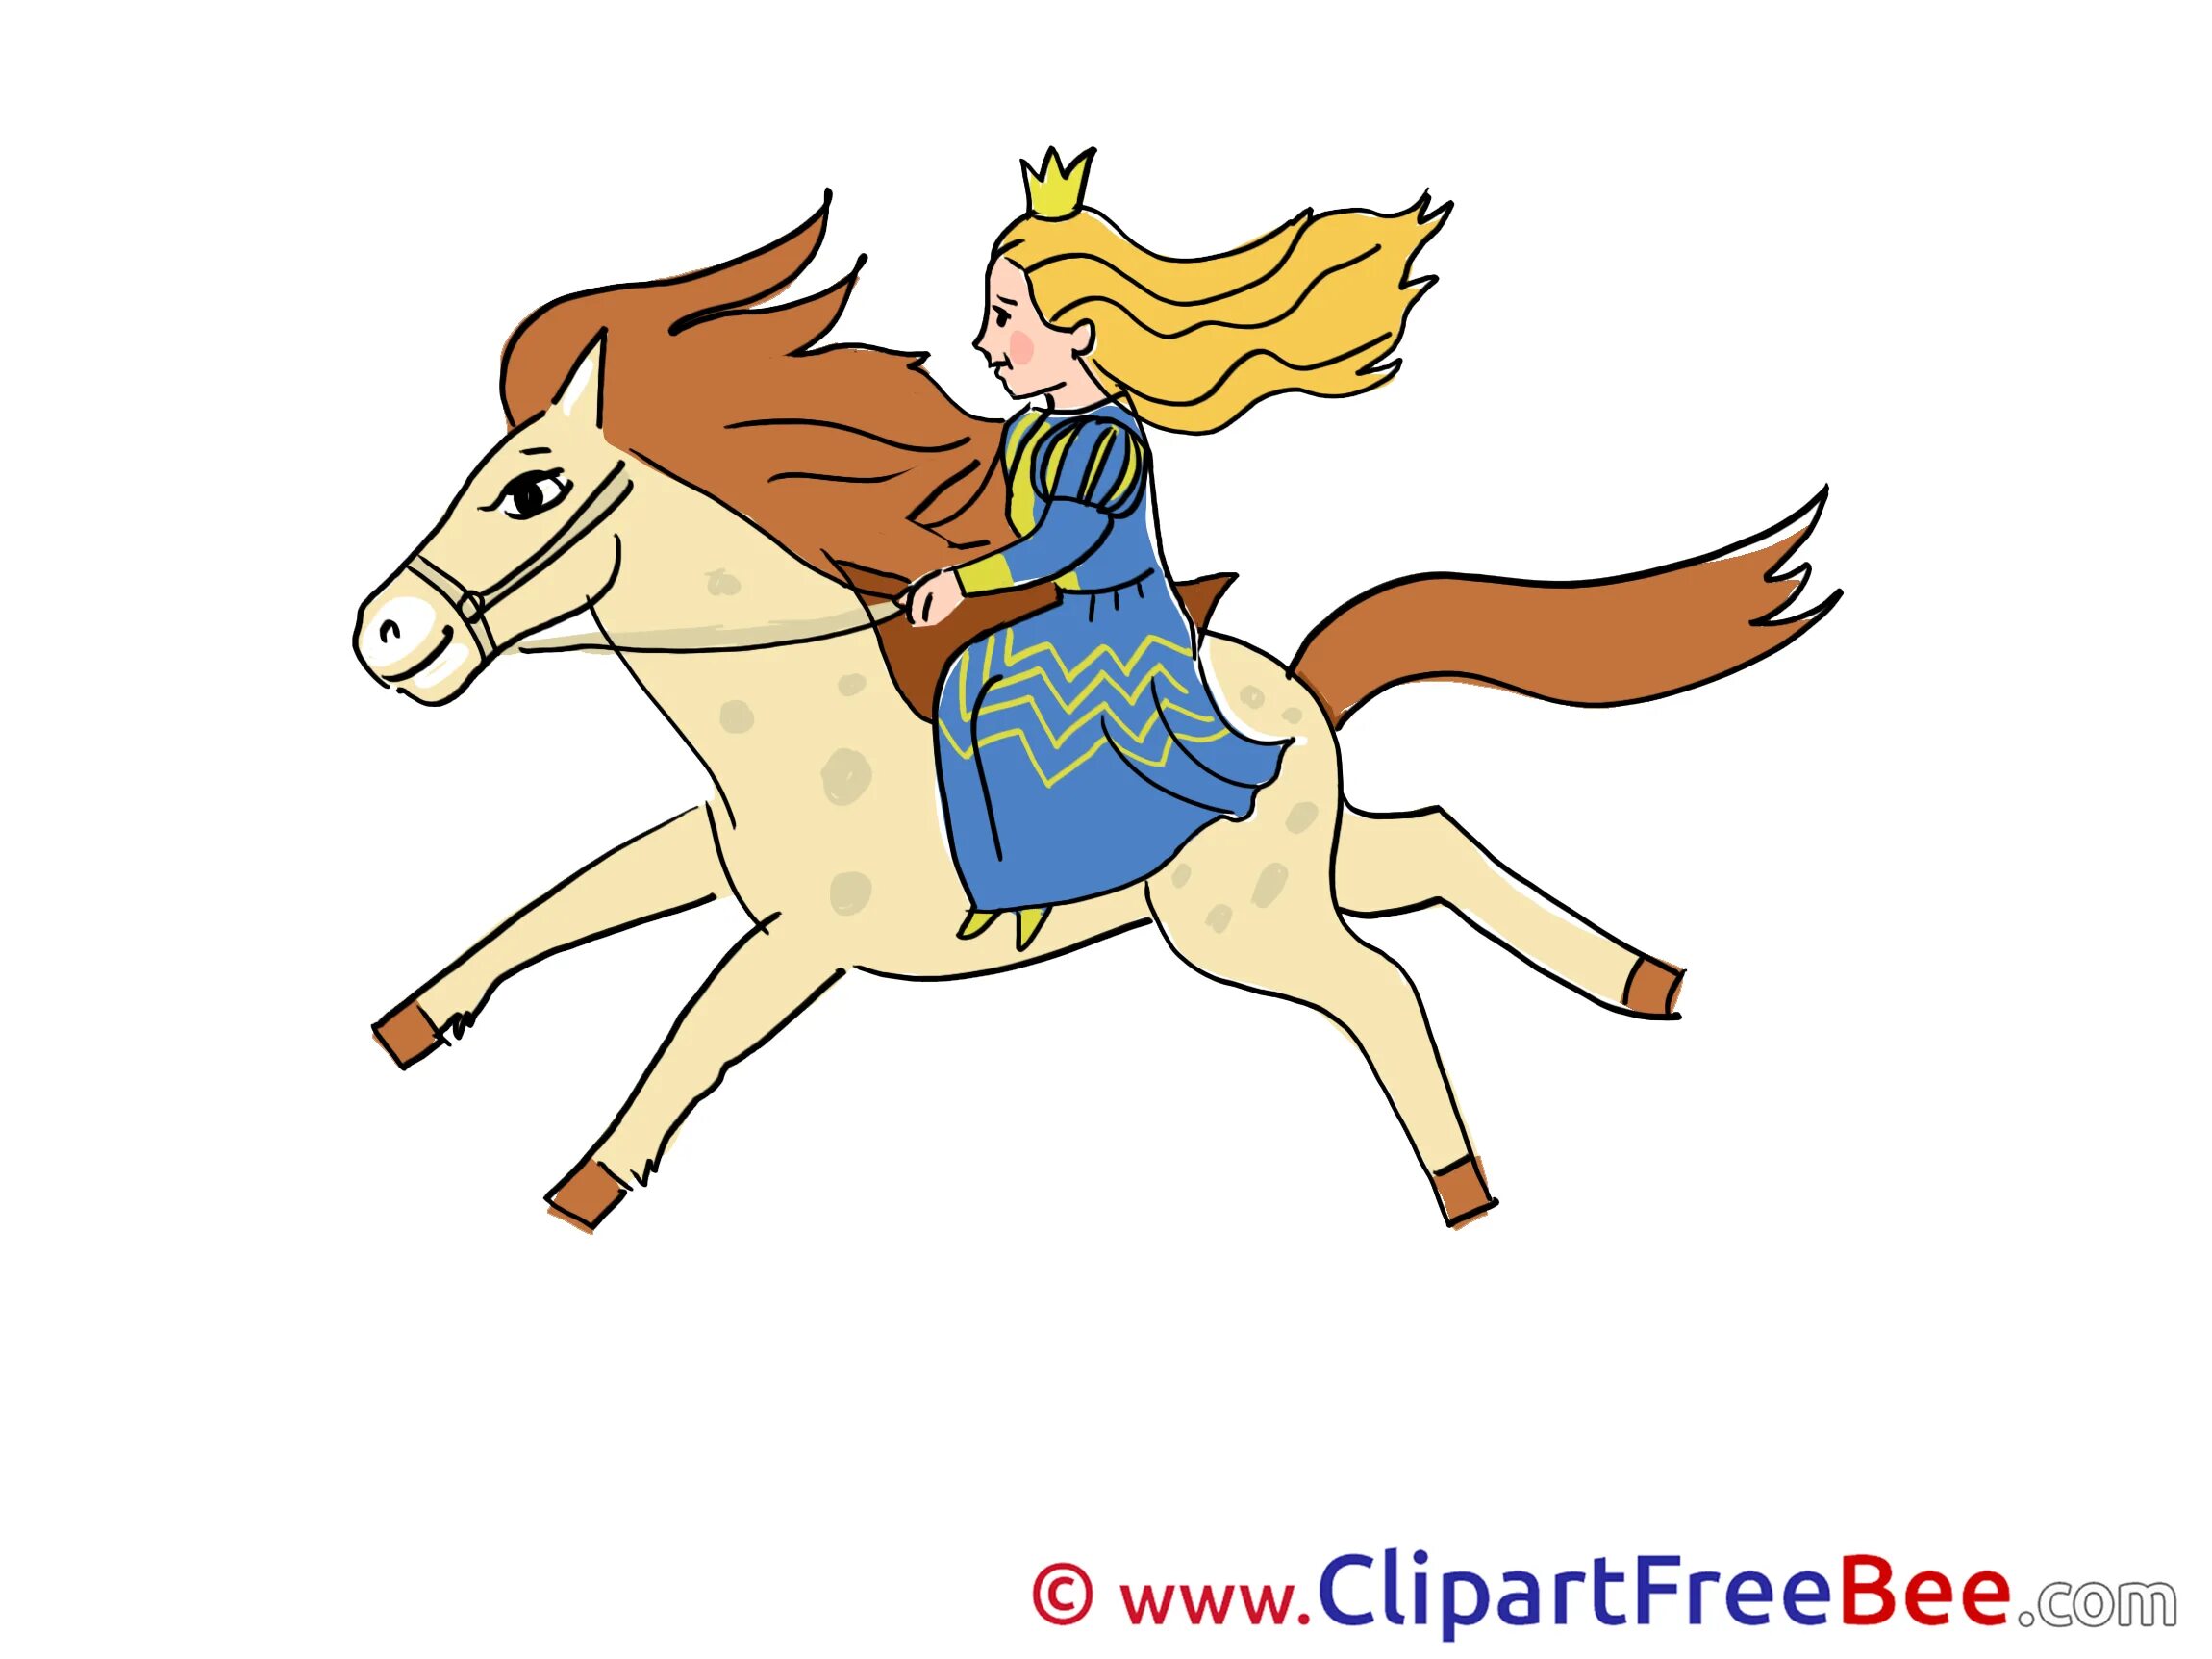 Принцесса едет. Сказочные лошади. Принцесса катается на лошади. Рисунки сказочных героев на лошади. Принцесса с лошадкой картинка.